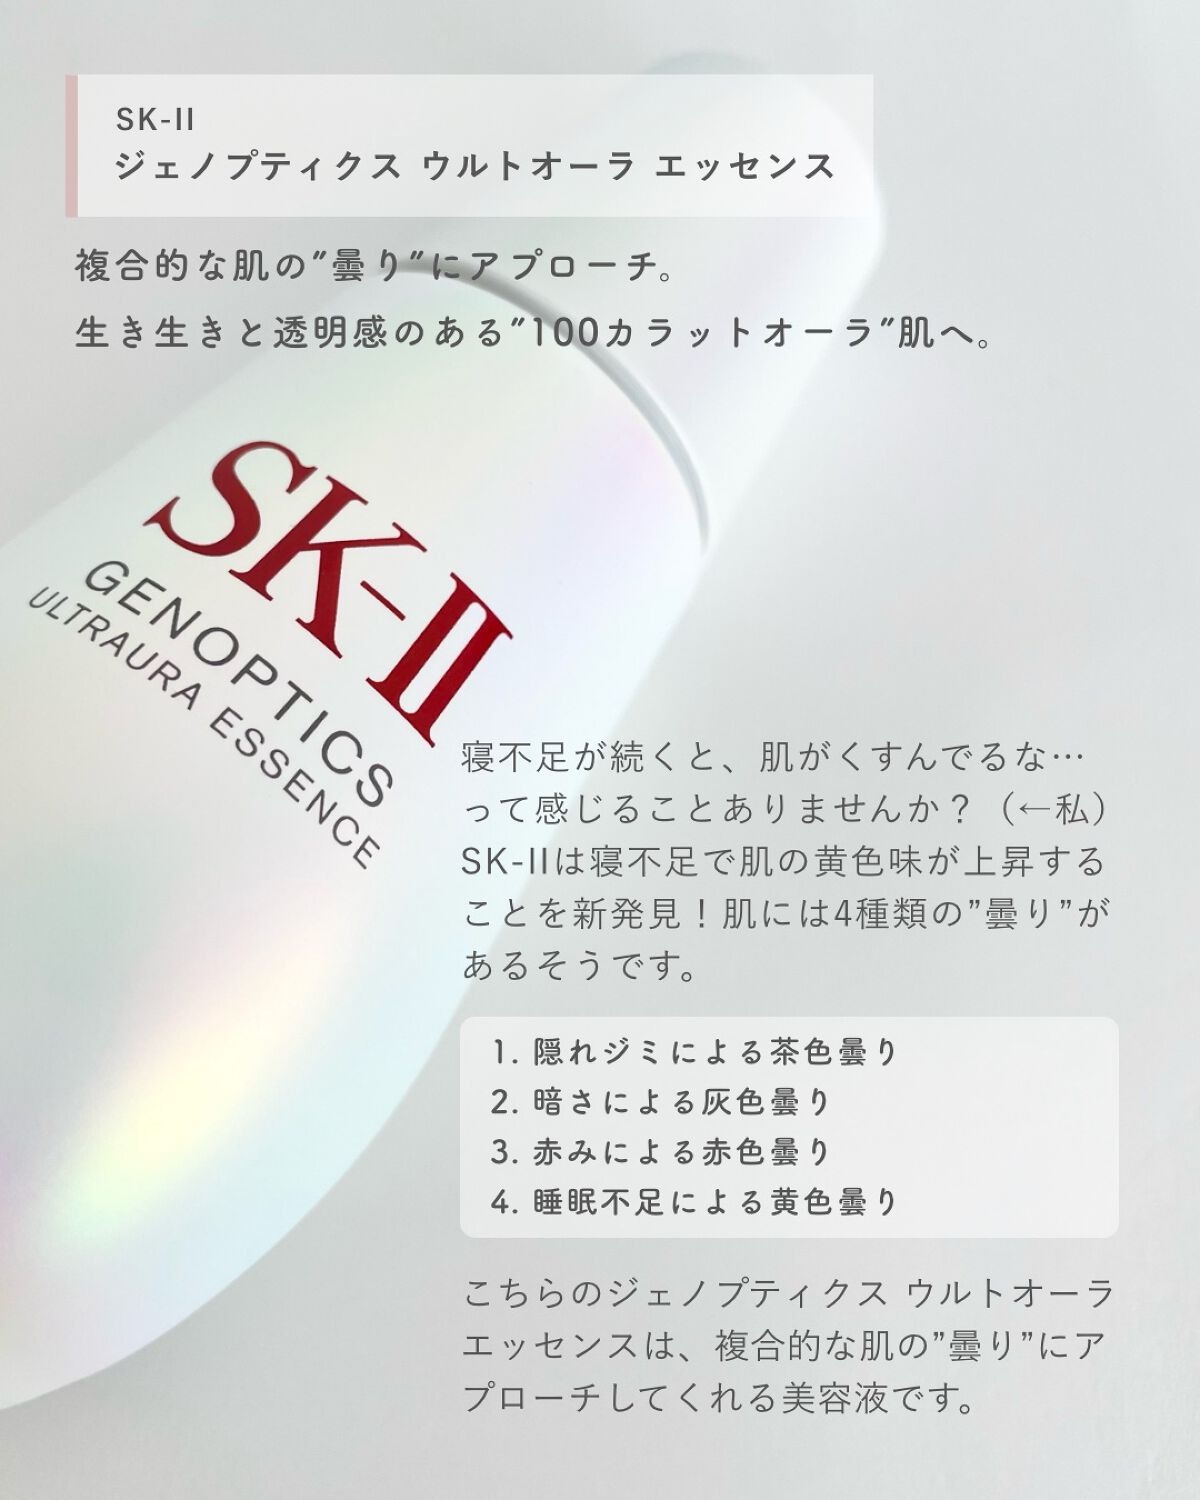 serum duong trang da sk ii genoptics ultraura essence nhat ban review